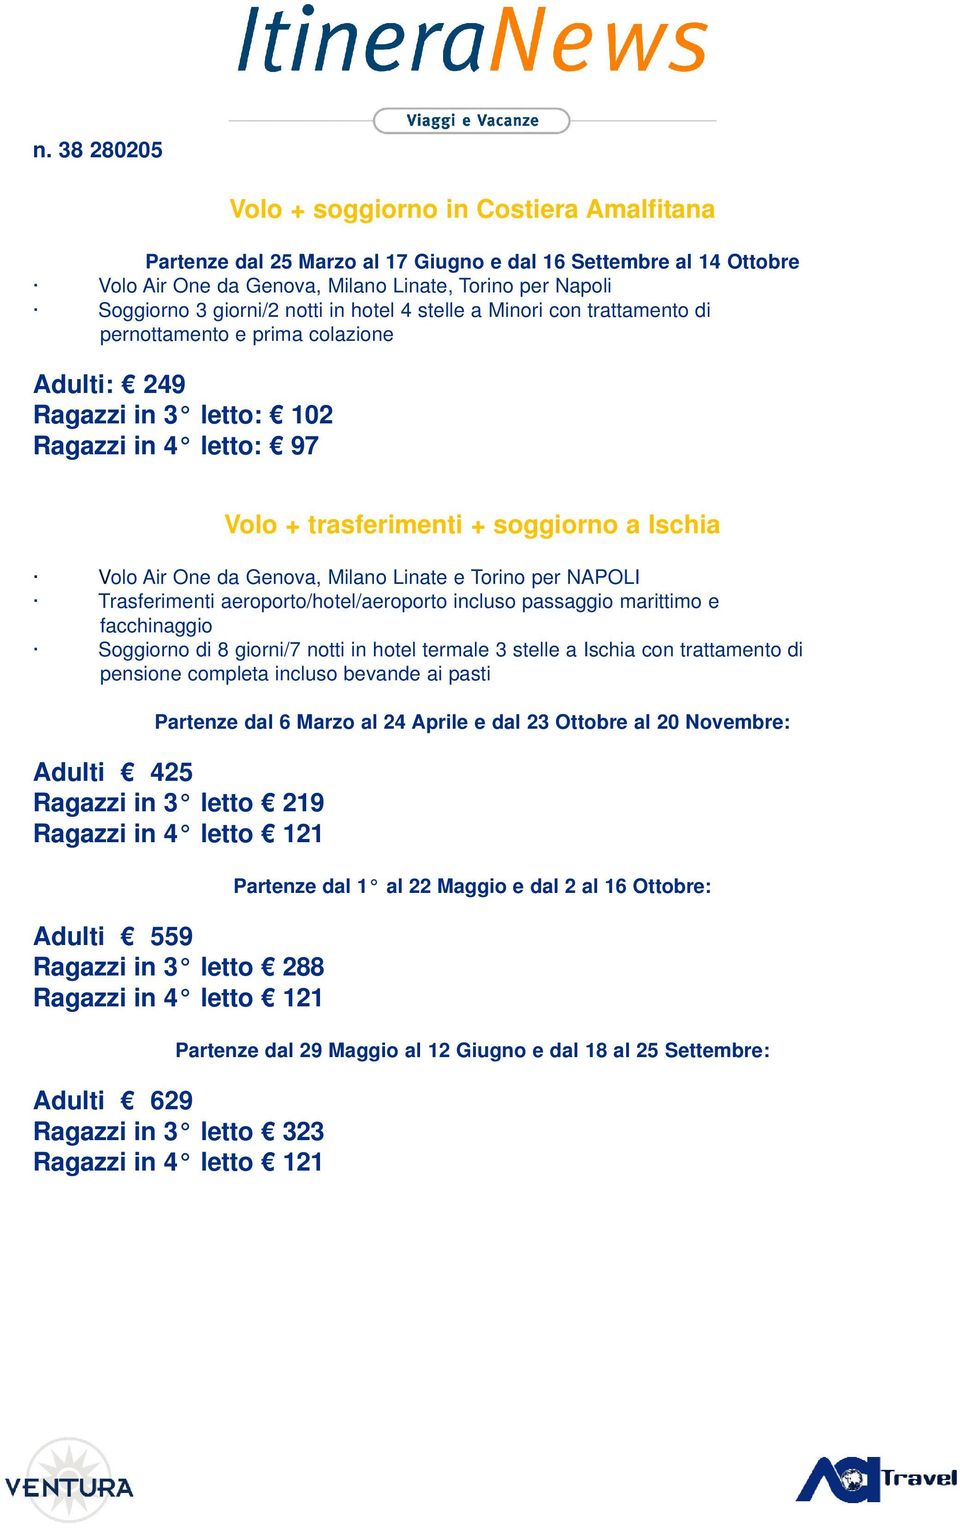 Milano Linate e Torino per NAPOLI Trasferimenti aeroporto/hotel/aeroporto incluso passaggio marittimo e facchinaggio Soggiorno di 8 giorni/7 notti in hotel termale 3 stelle a Ischia con trattamento